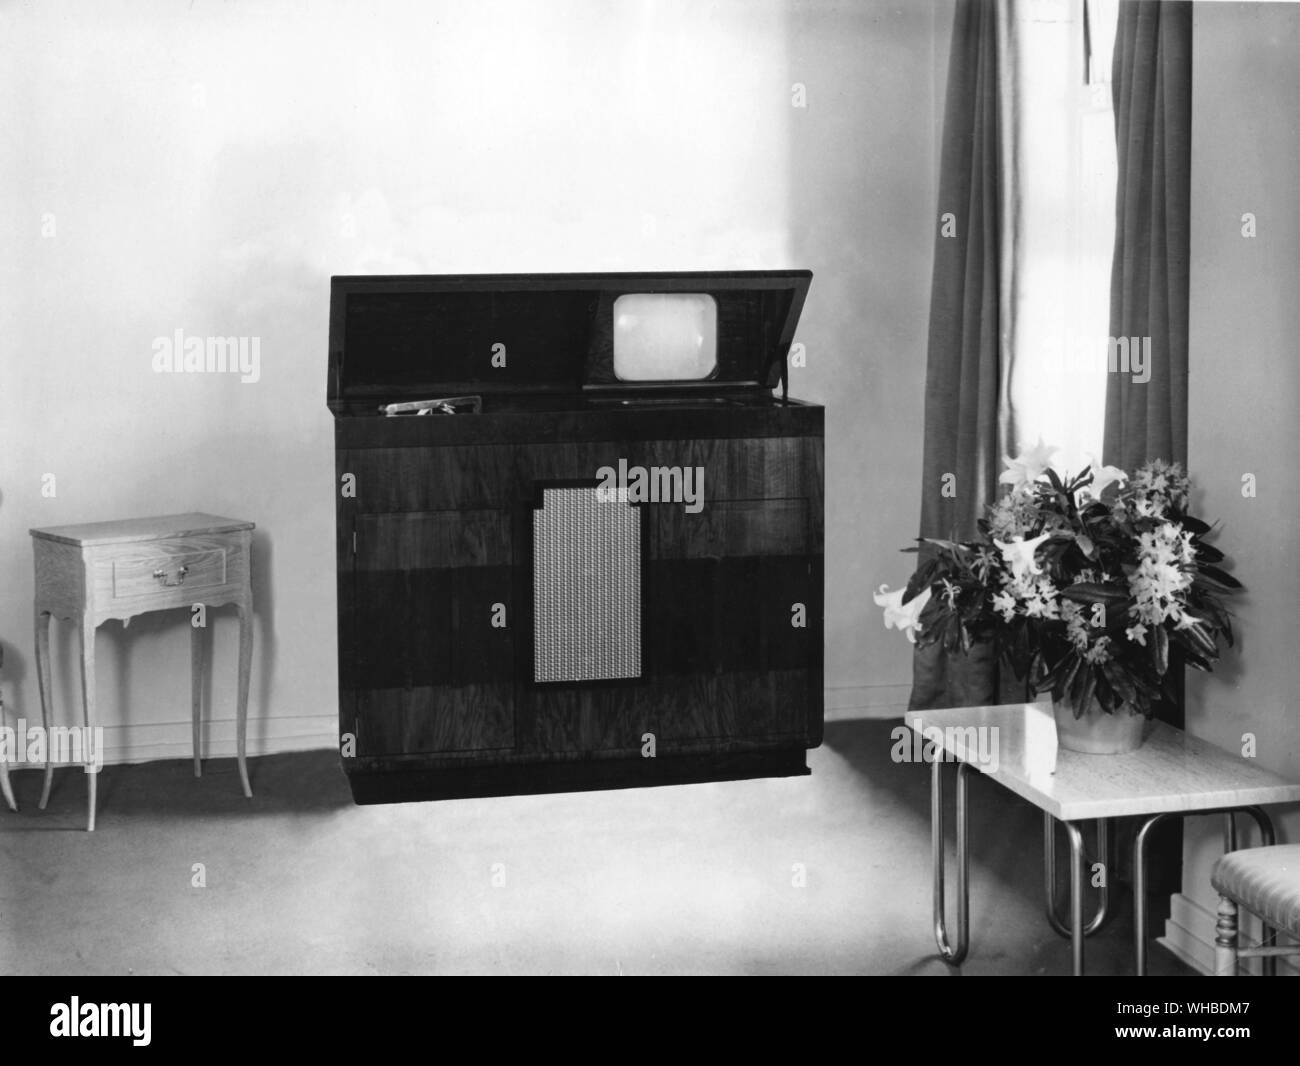 Lusso set TV 1937 stile - la televisione di Baird radiogramma, prezzo 125 gns o £137.25 in Monetazione decimale (circa 650 dollari nel 1937). Foto Stock